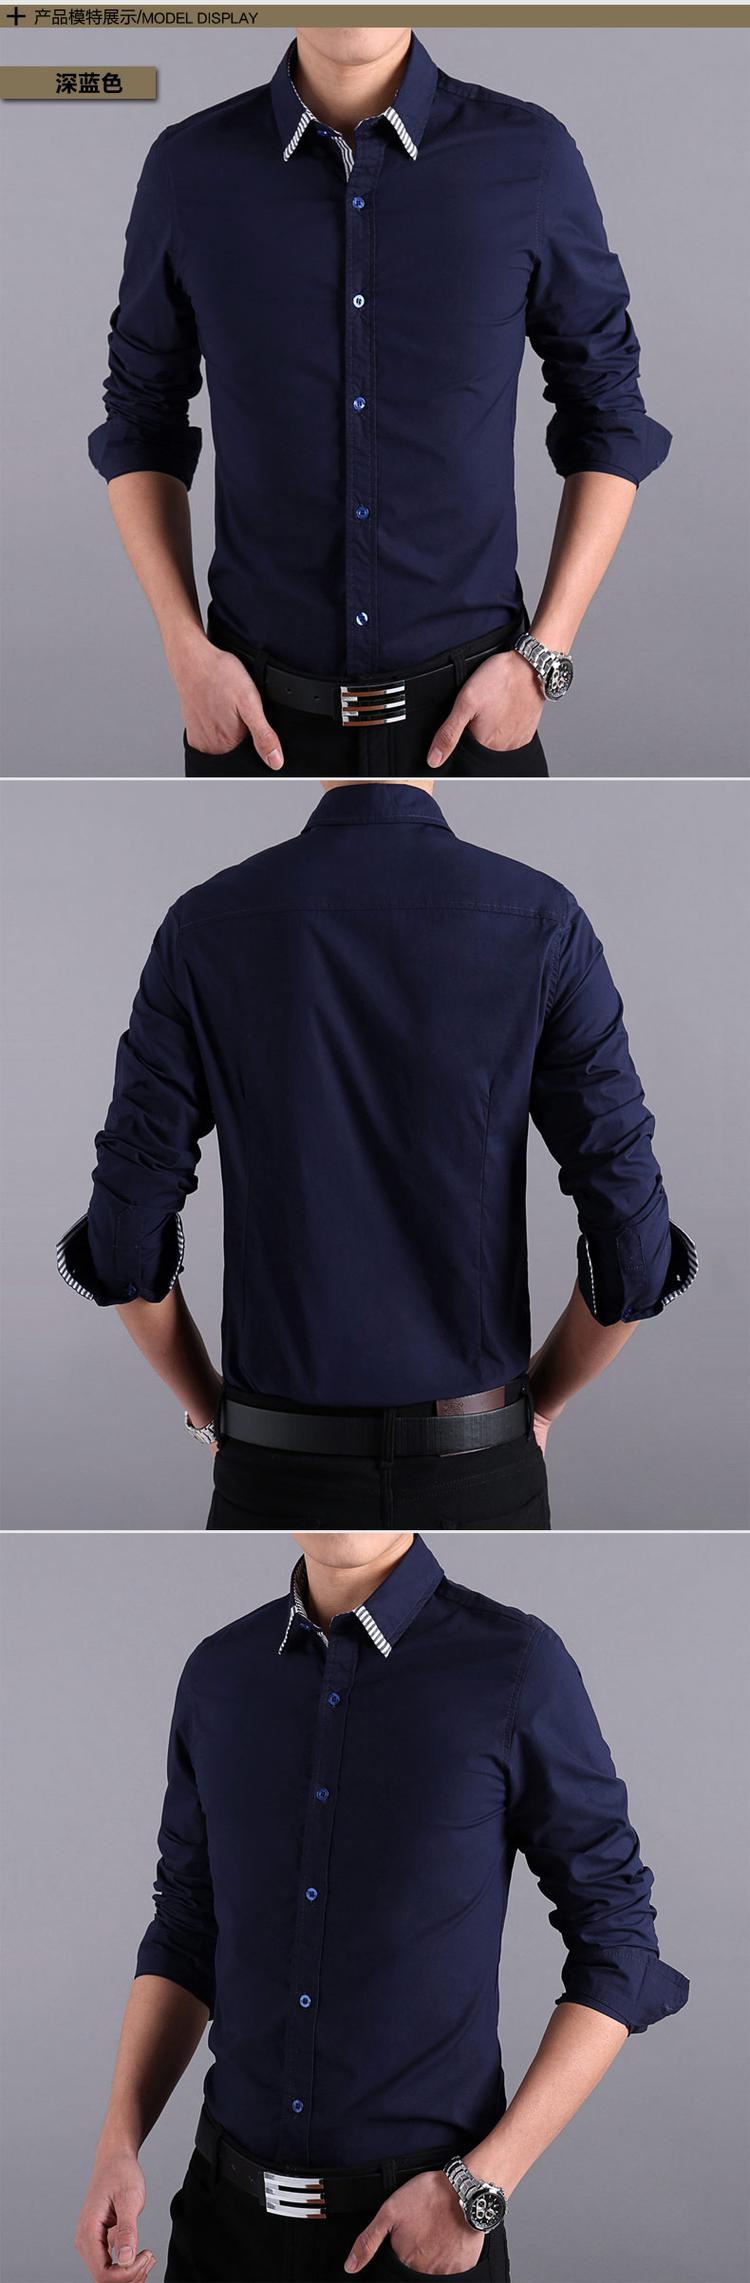 mssefn2014春夏新款男装韩版男士修身休闲长袖衬衫QT1503-12103